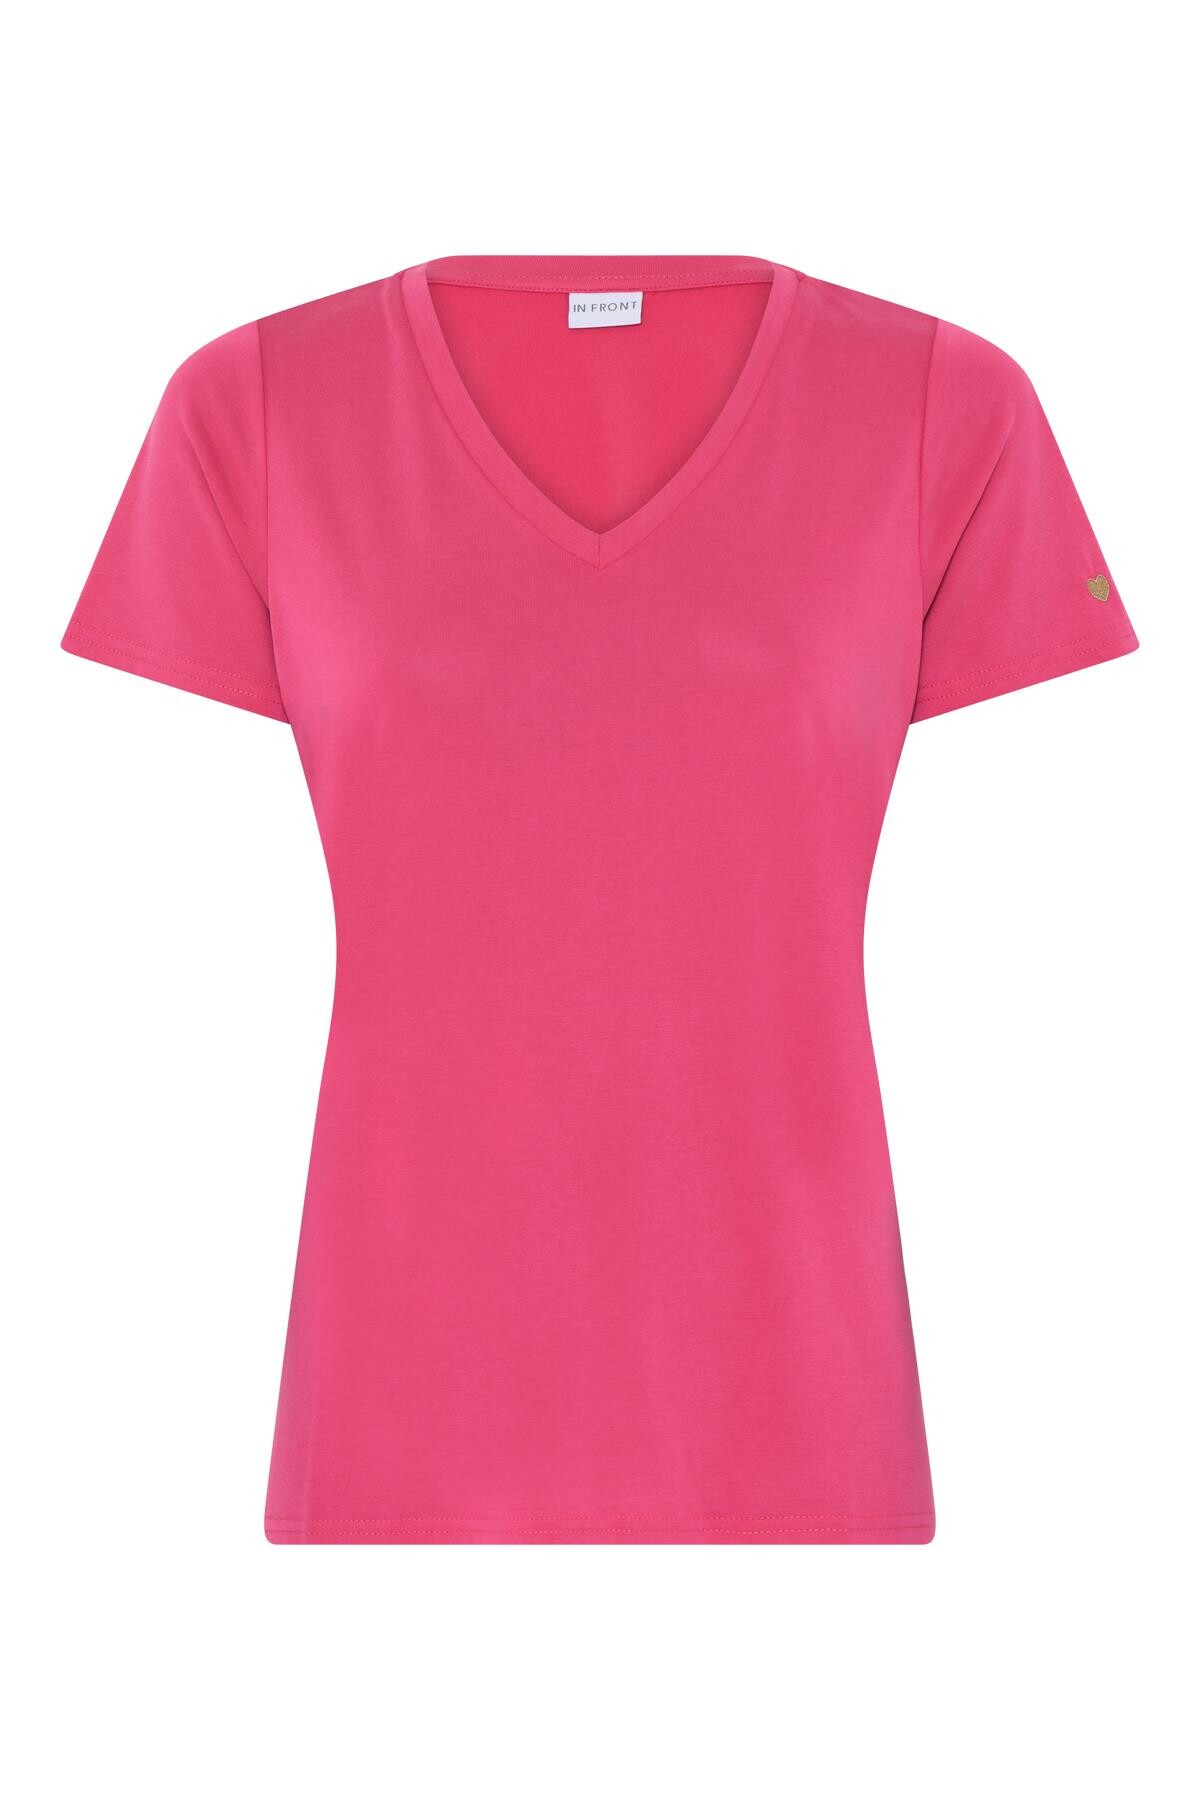 In Front Nina T-shirt, Farve: Pink, Størrelse: M, Dame